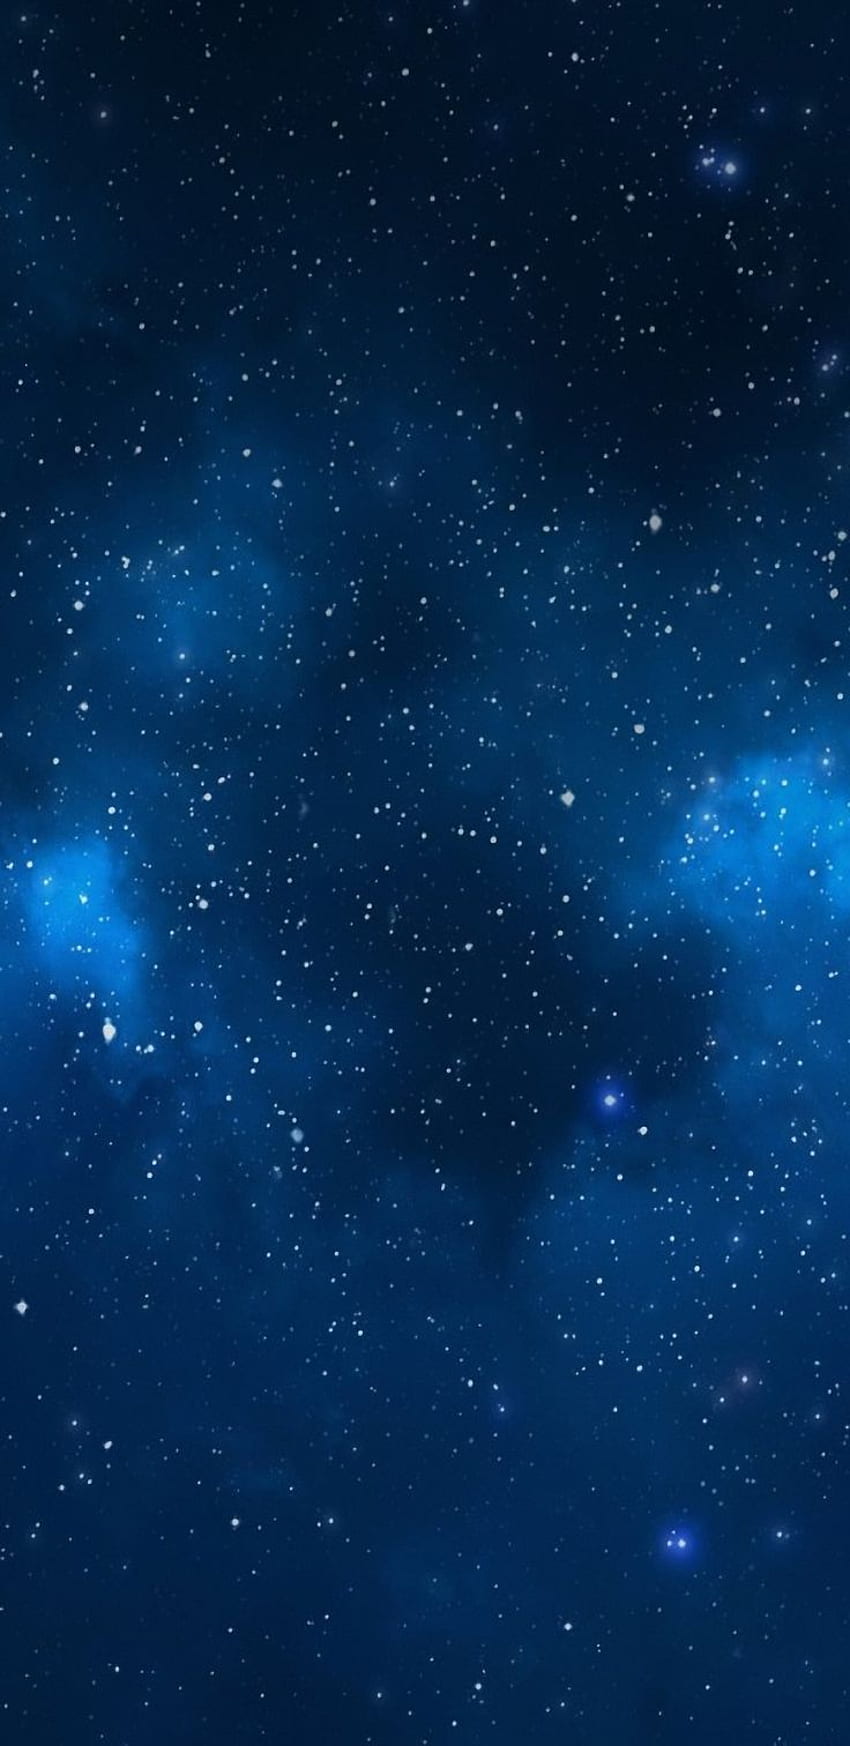 Dunkel, blau, Galaxie, ruhig, Schönheit, Natur, Nacht, Himmel, Sterne, Samsung. Blauer Hintergrund, Dunkelblau, Blaue Galaxie, Samsung Galaxy Star HD-Handy-Hintergrundbild